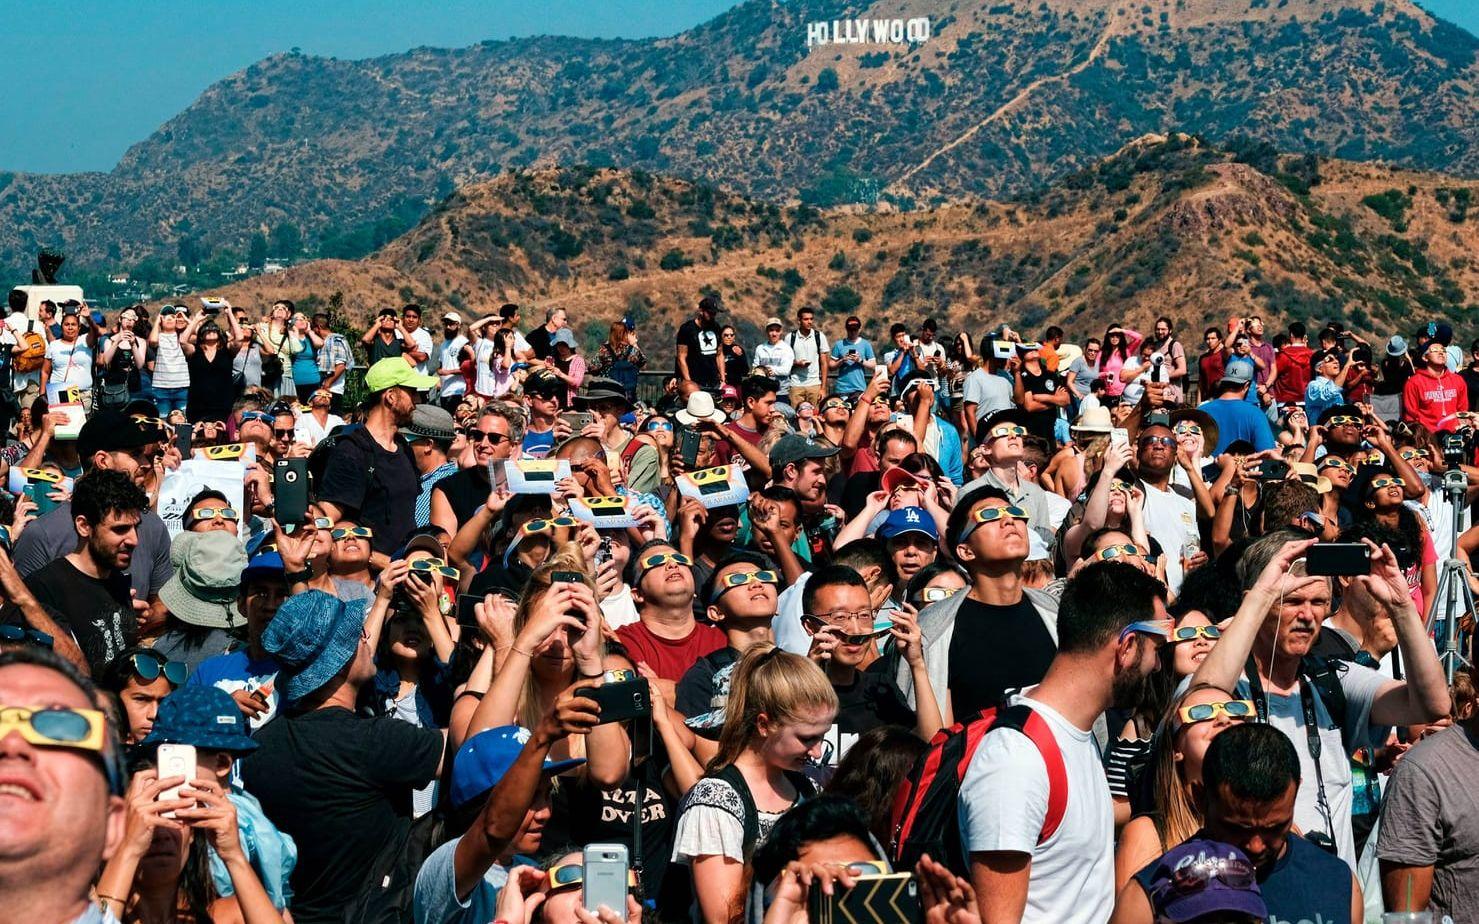 Många samlades nedanför Hollywoodskylten för att beskåda fenomenet. Bild: AP/TT